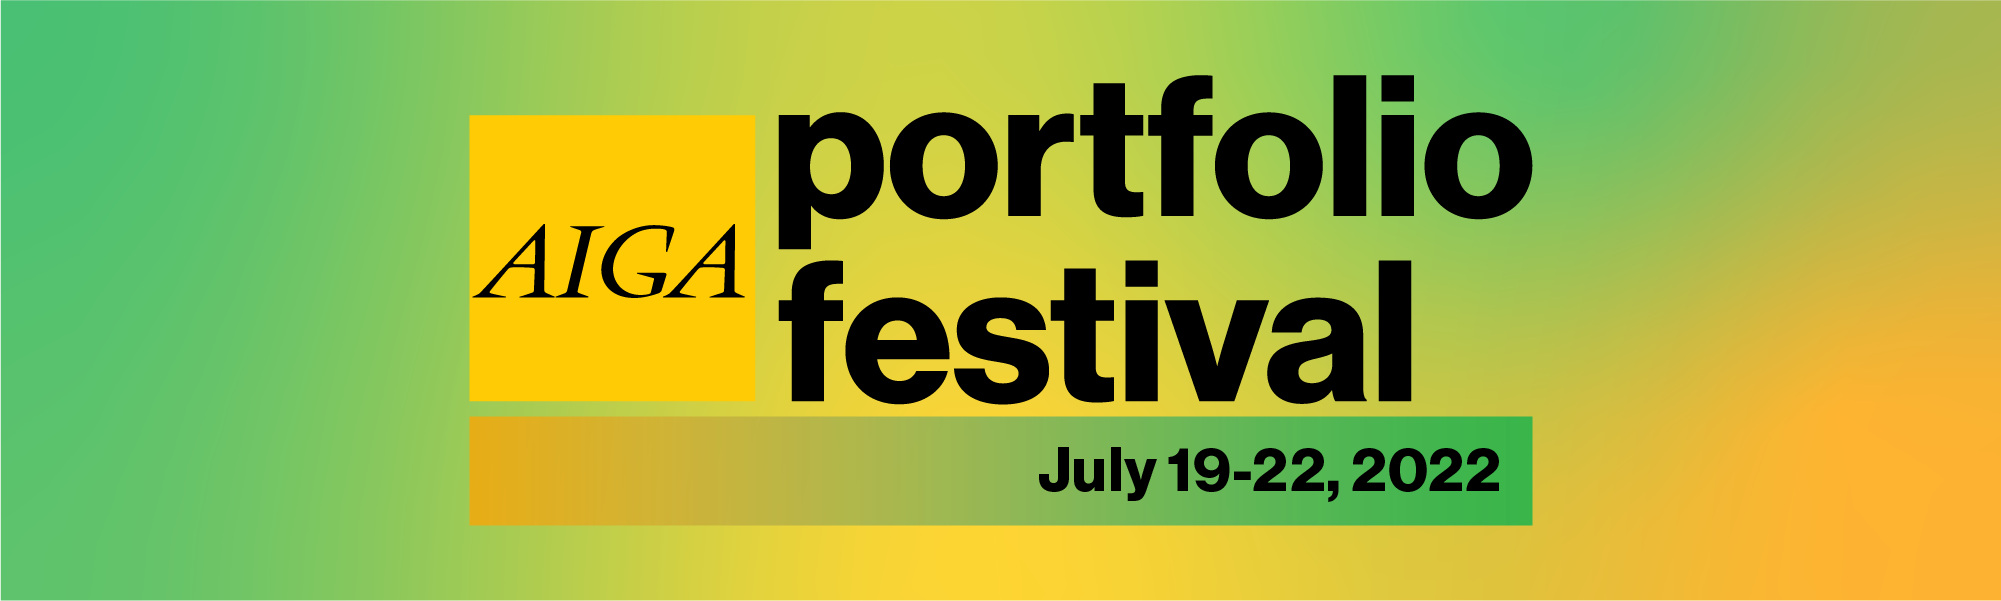 AIGA Portfolio Festival Logo